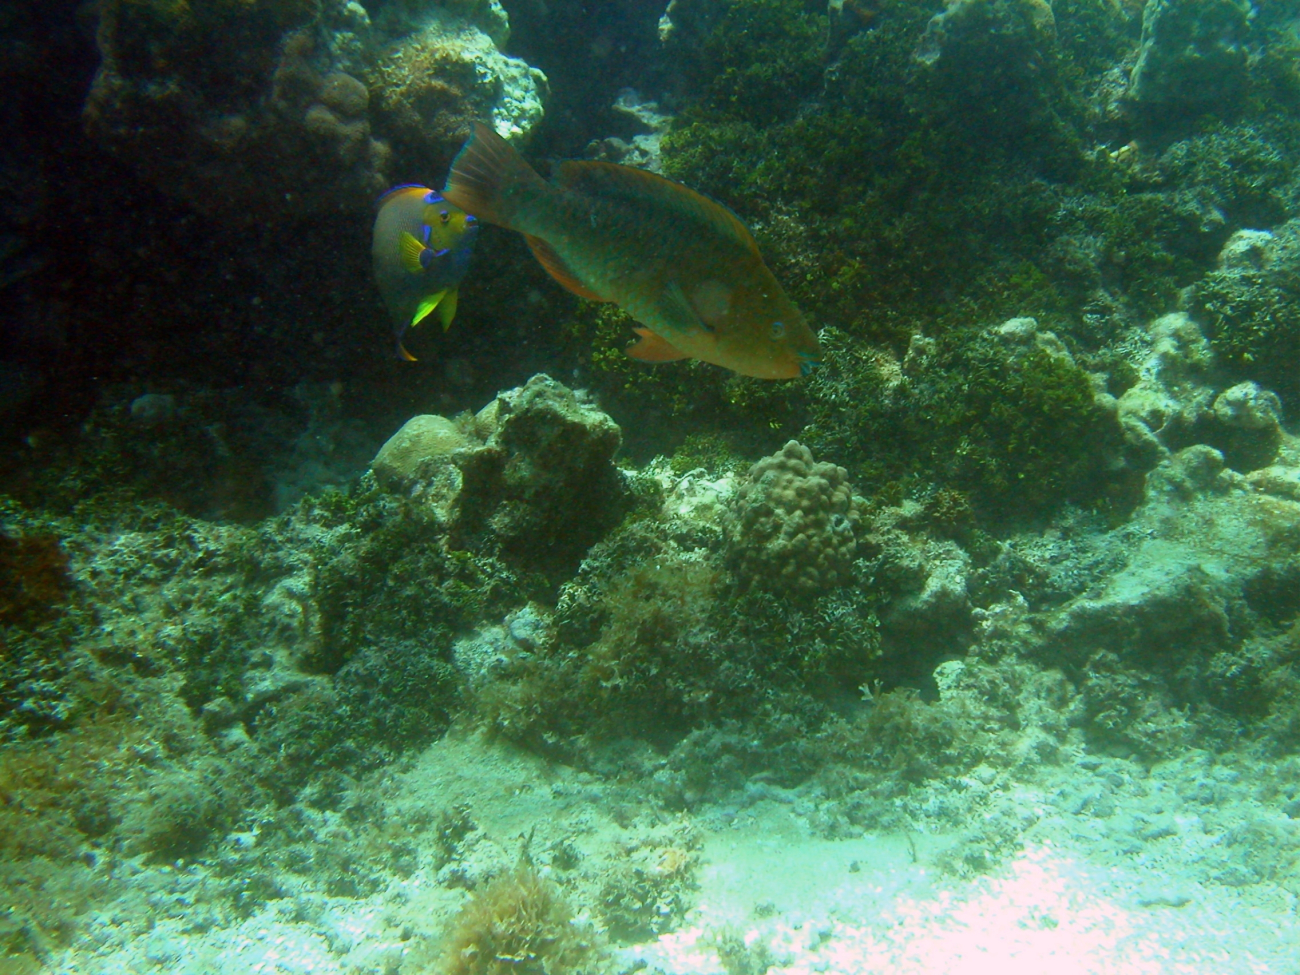 Rainbow parrotfish (Scarus guacamaia)